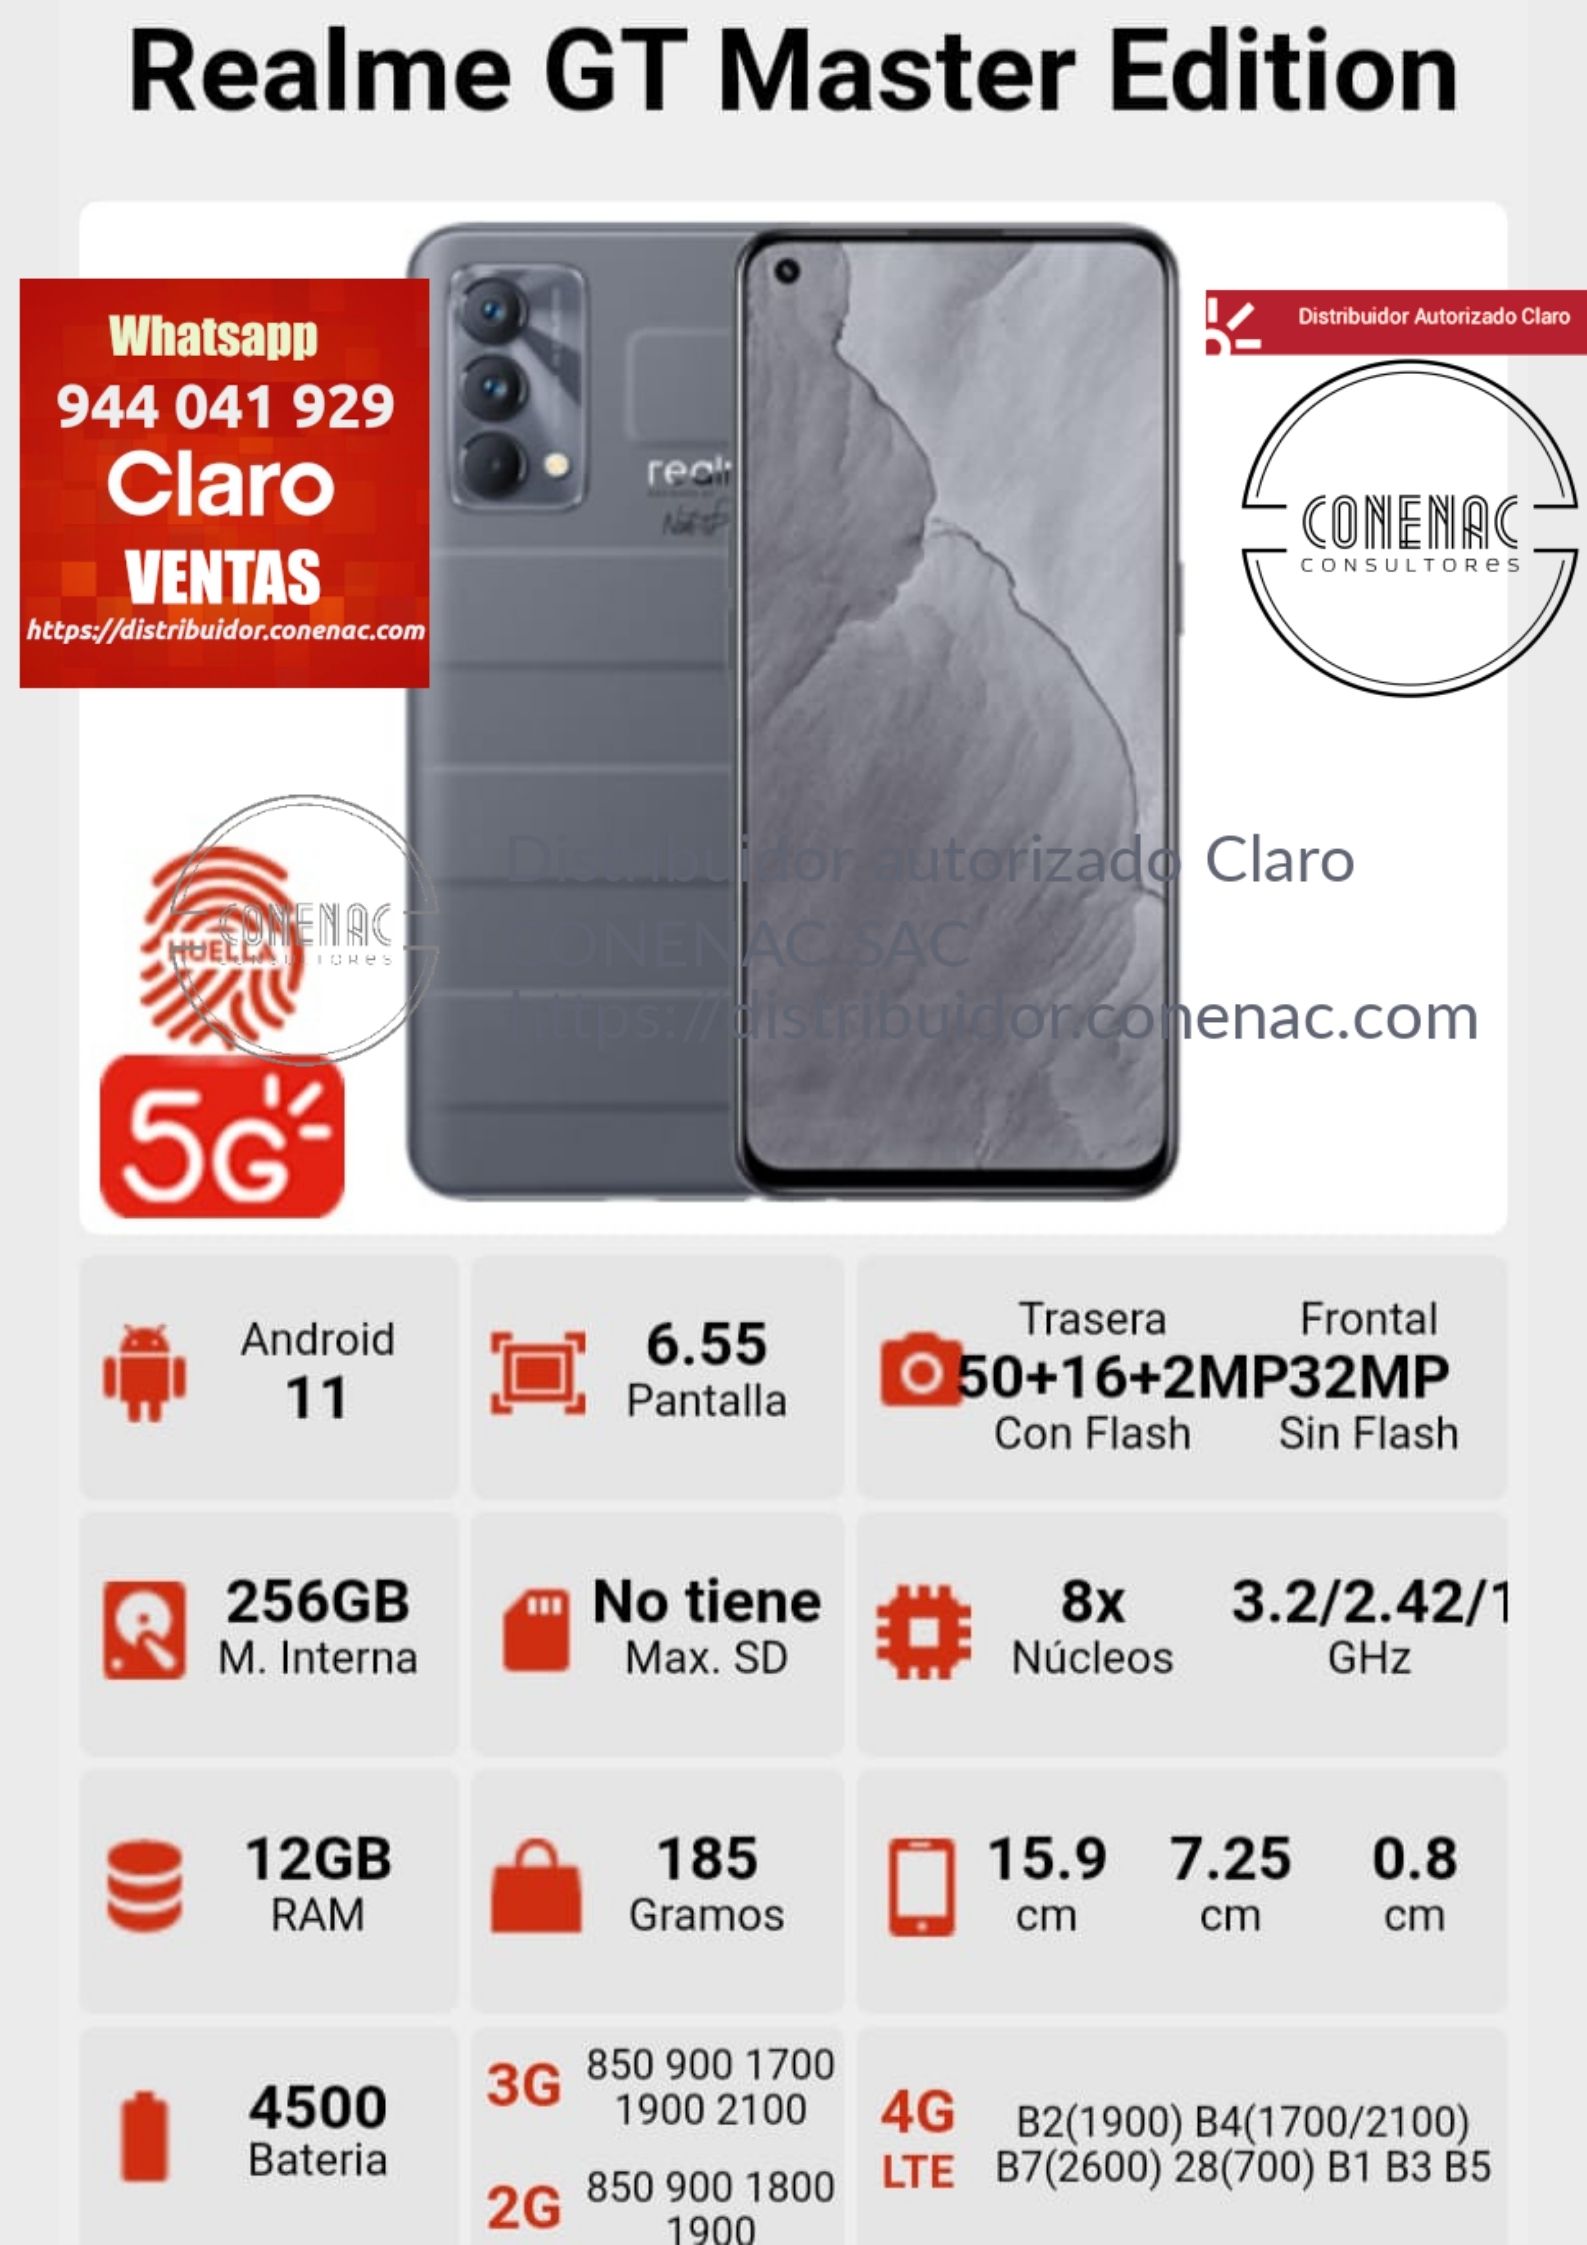 REALME GT MASTER EDITION 256GB (RAM 12GB) – Distribuidor Autorizado Claro  Peru